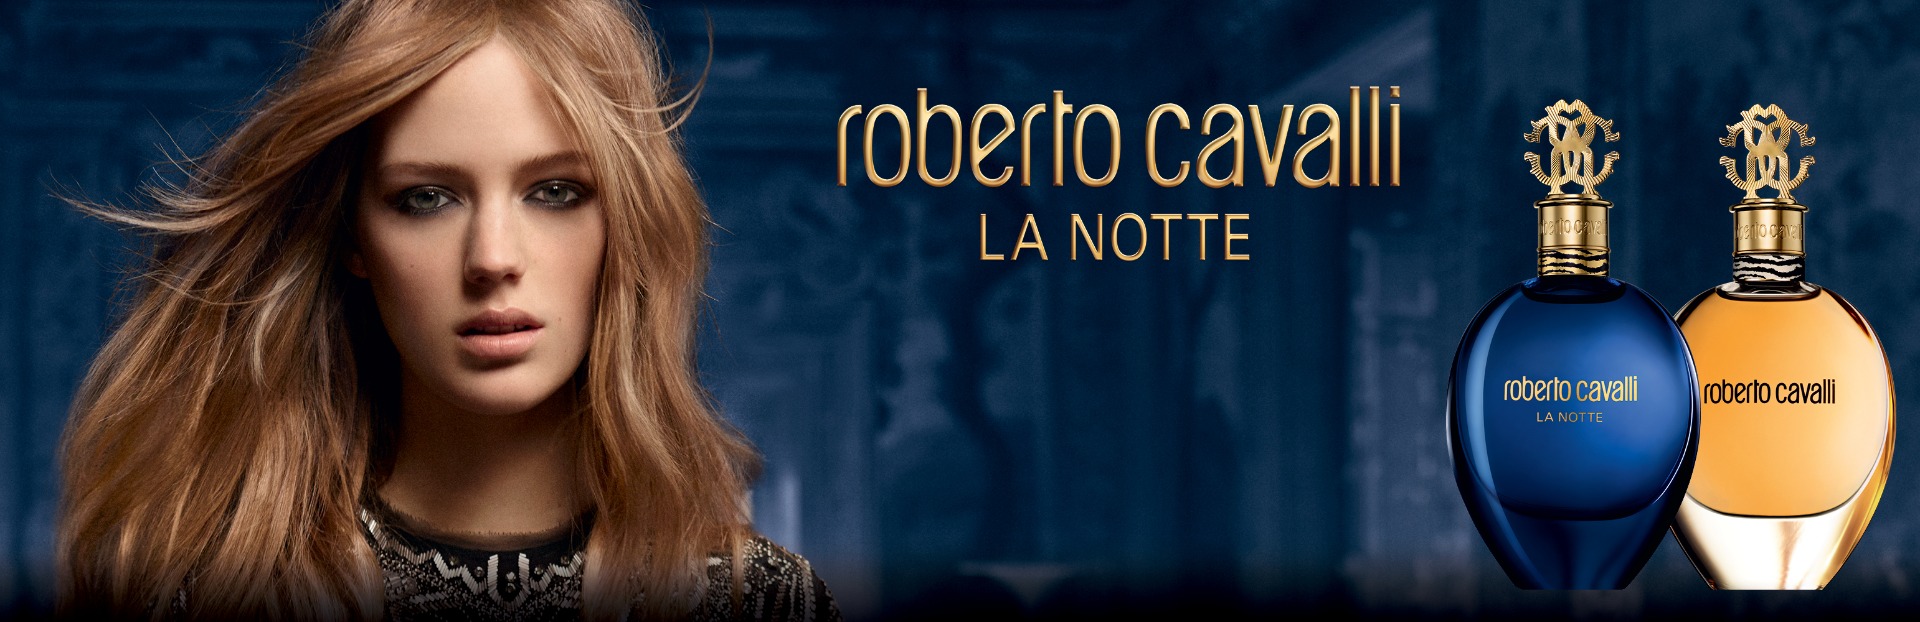 Roberto Cavalli La Notte Roberto Cavalli perfume - a fragrance for ...